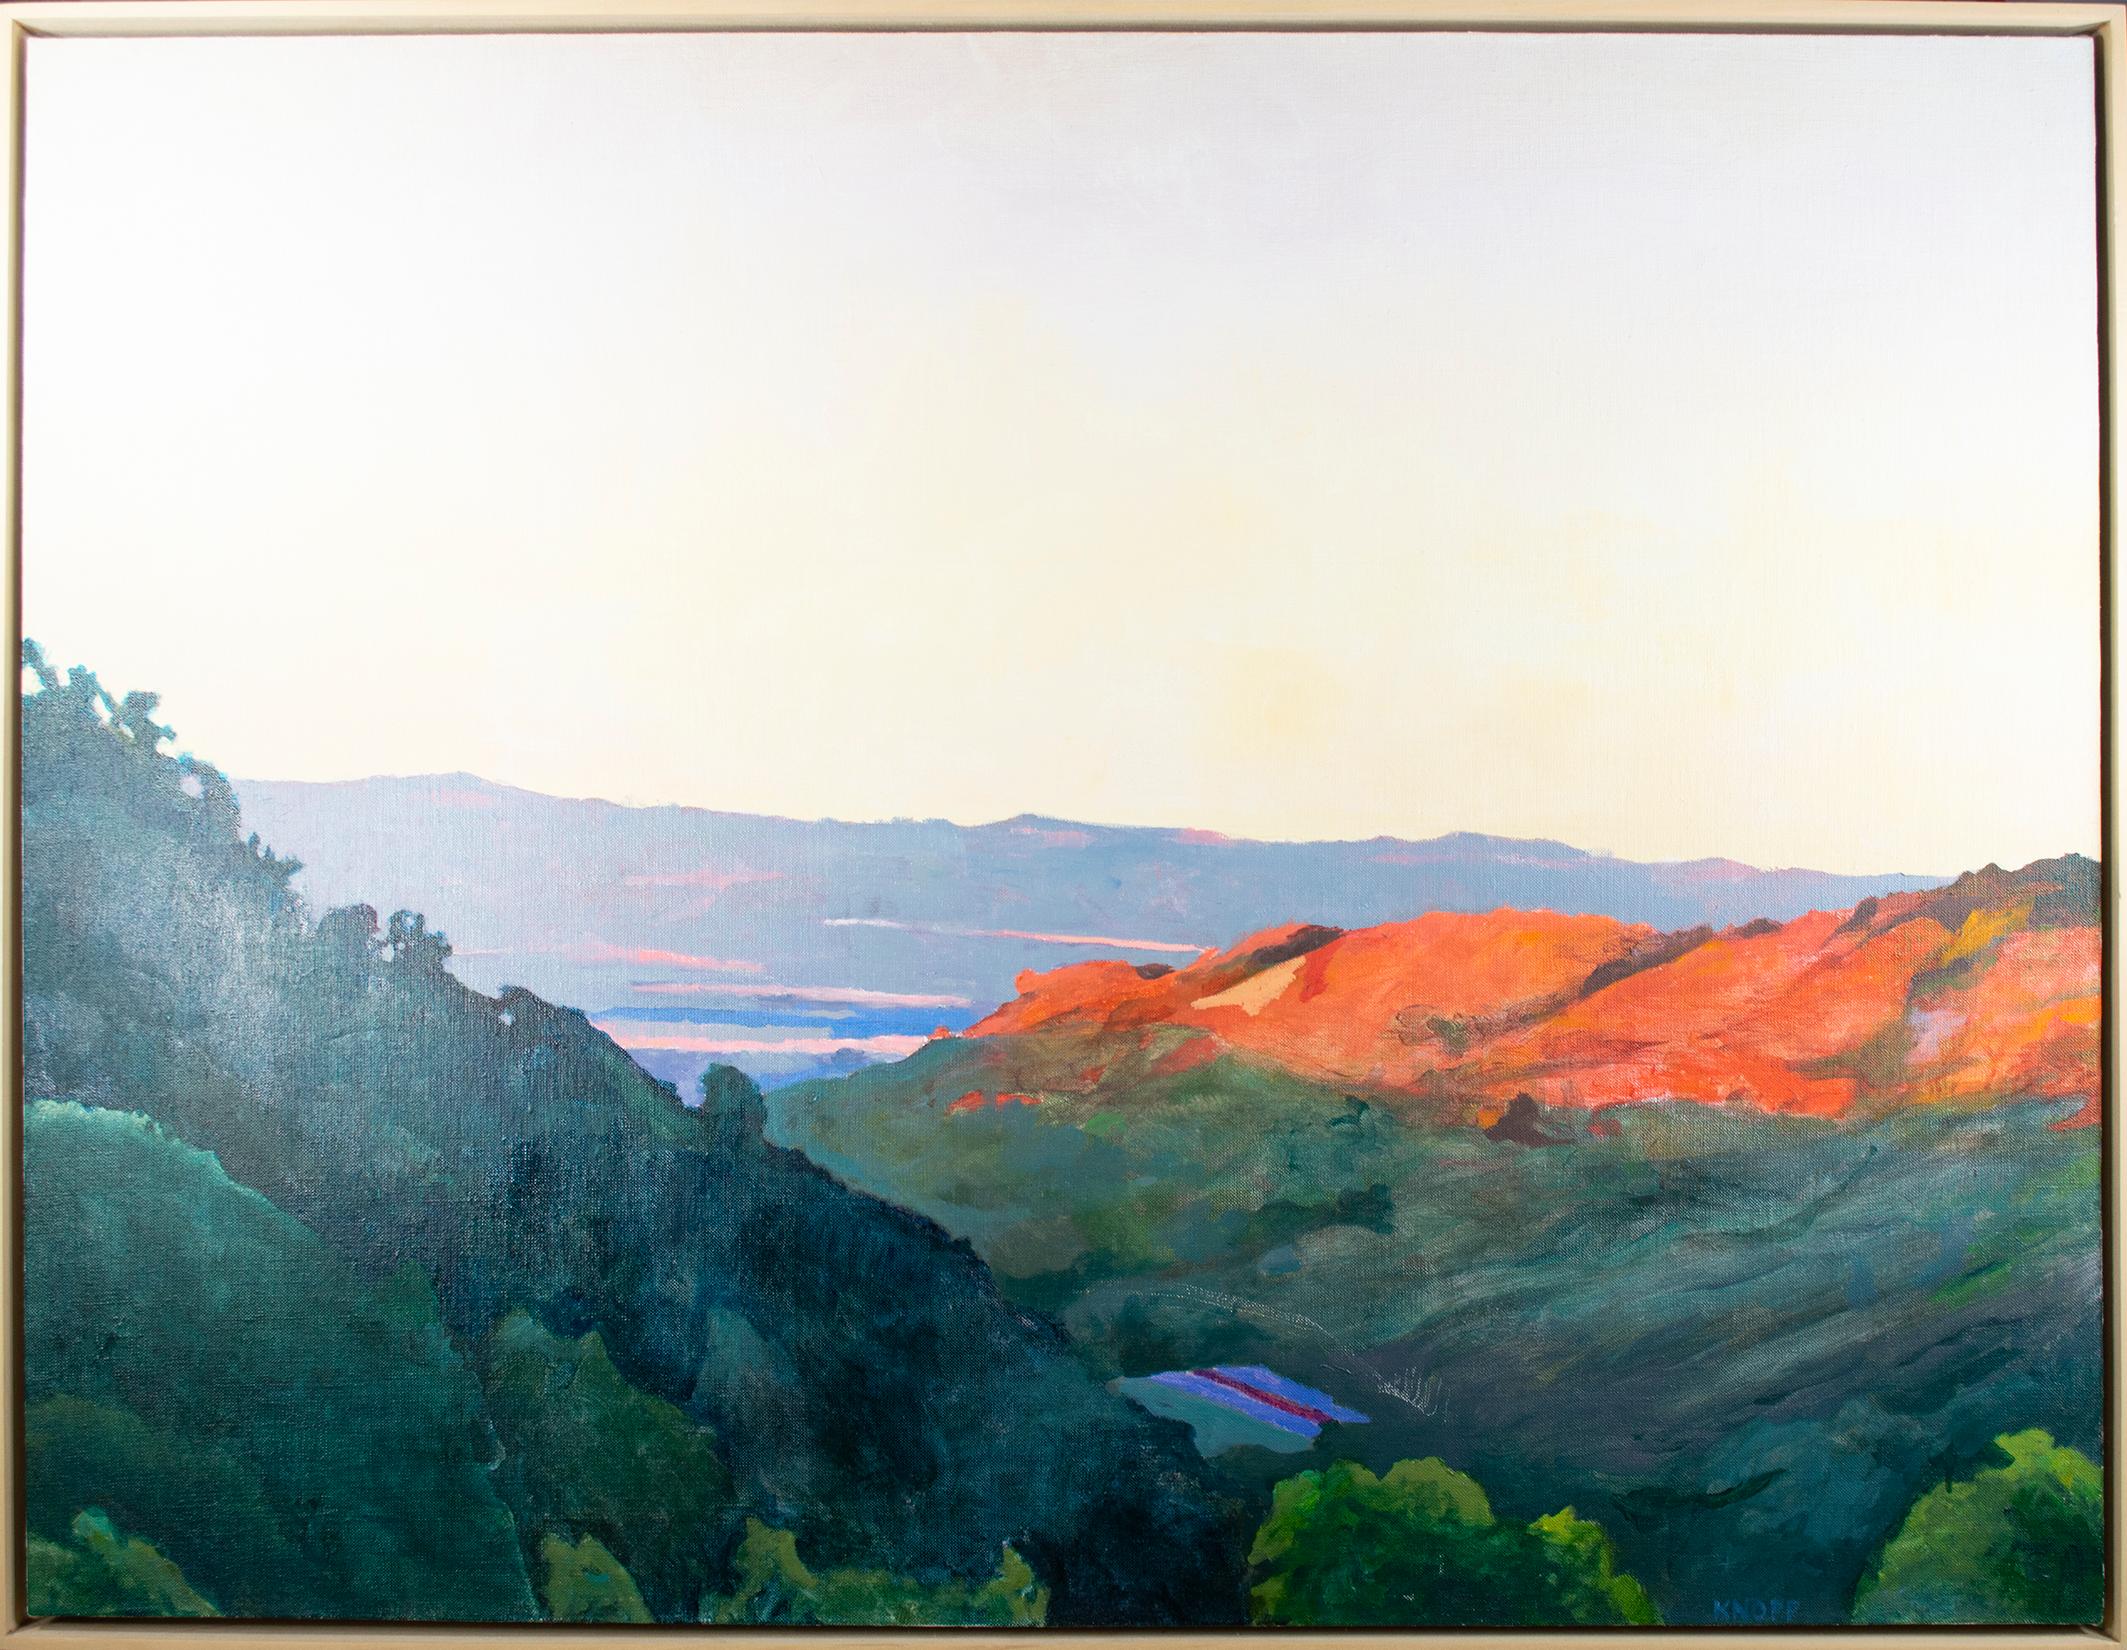 king's Bluff, La Crosse" est un paysage original à l'huile signé par l'artiste du Midwest Kevin Knopp. Dans la perspective, les montagnes s'élancent de part et d'autre de la toile dans des verts et des oranges profonds. Au loin, au-delà des